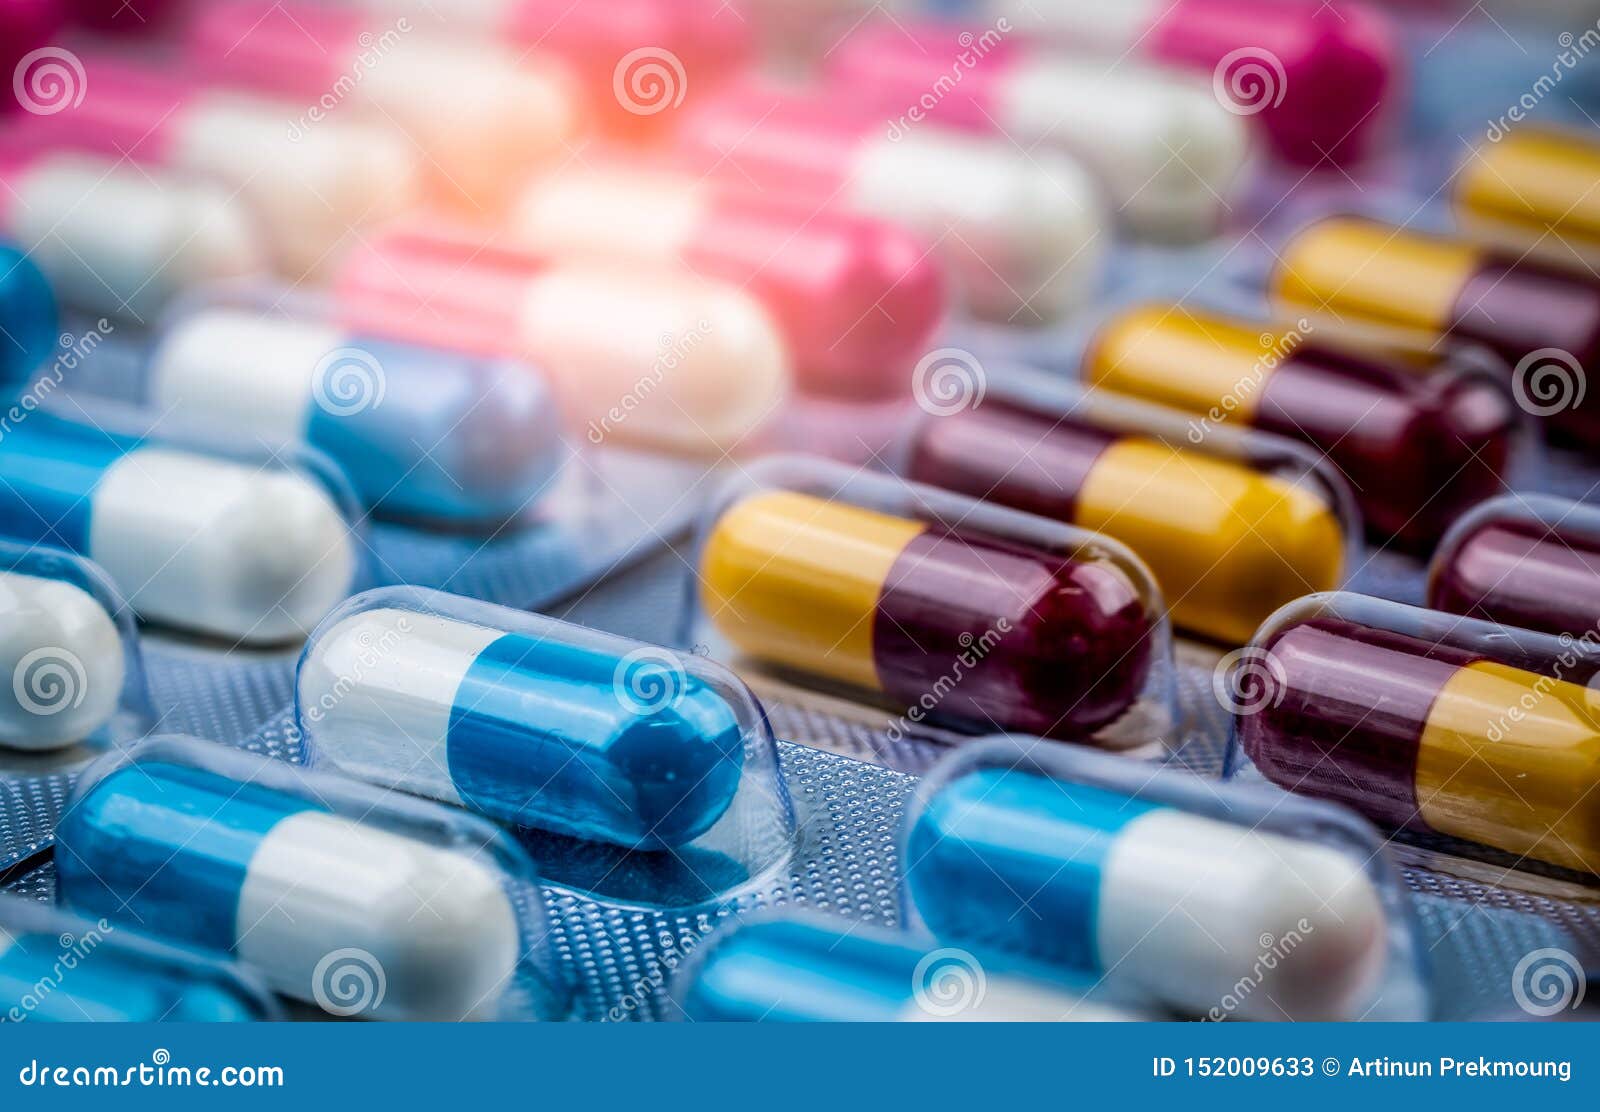 blue-white capsule pills in blister pack. pharmaceutical industry. drug package. pharmaceutics concept. drug use in hospital.